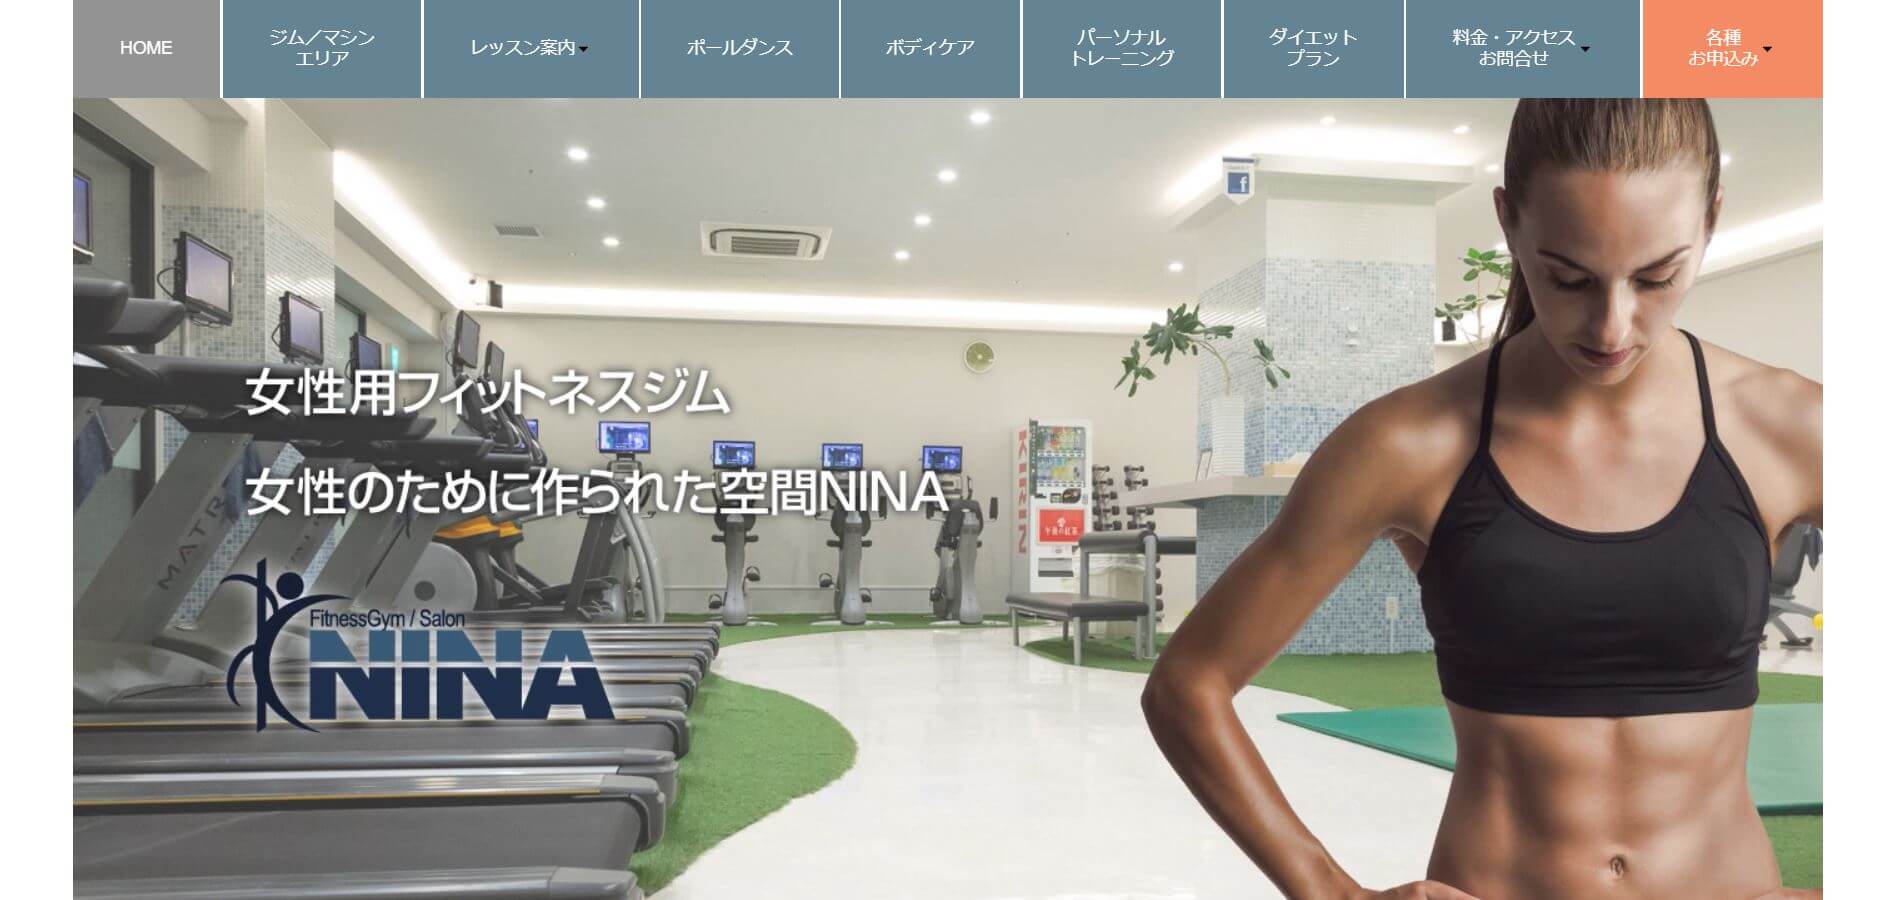 FitnessGym/Salon NINA（フィットネスジム・サロンNINA）